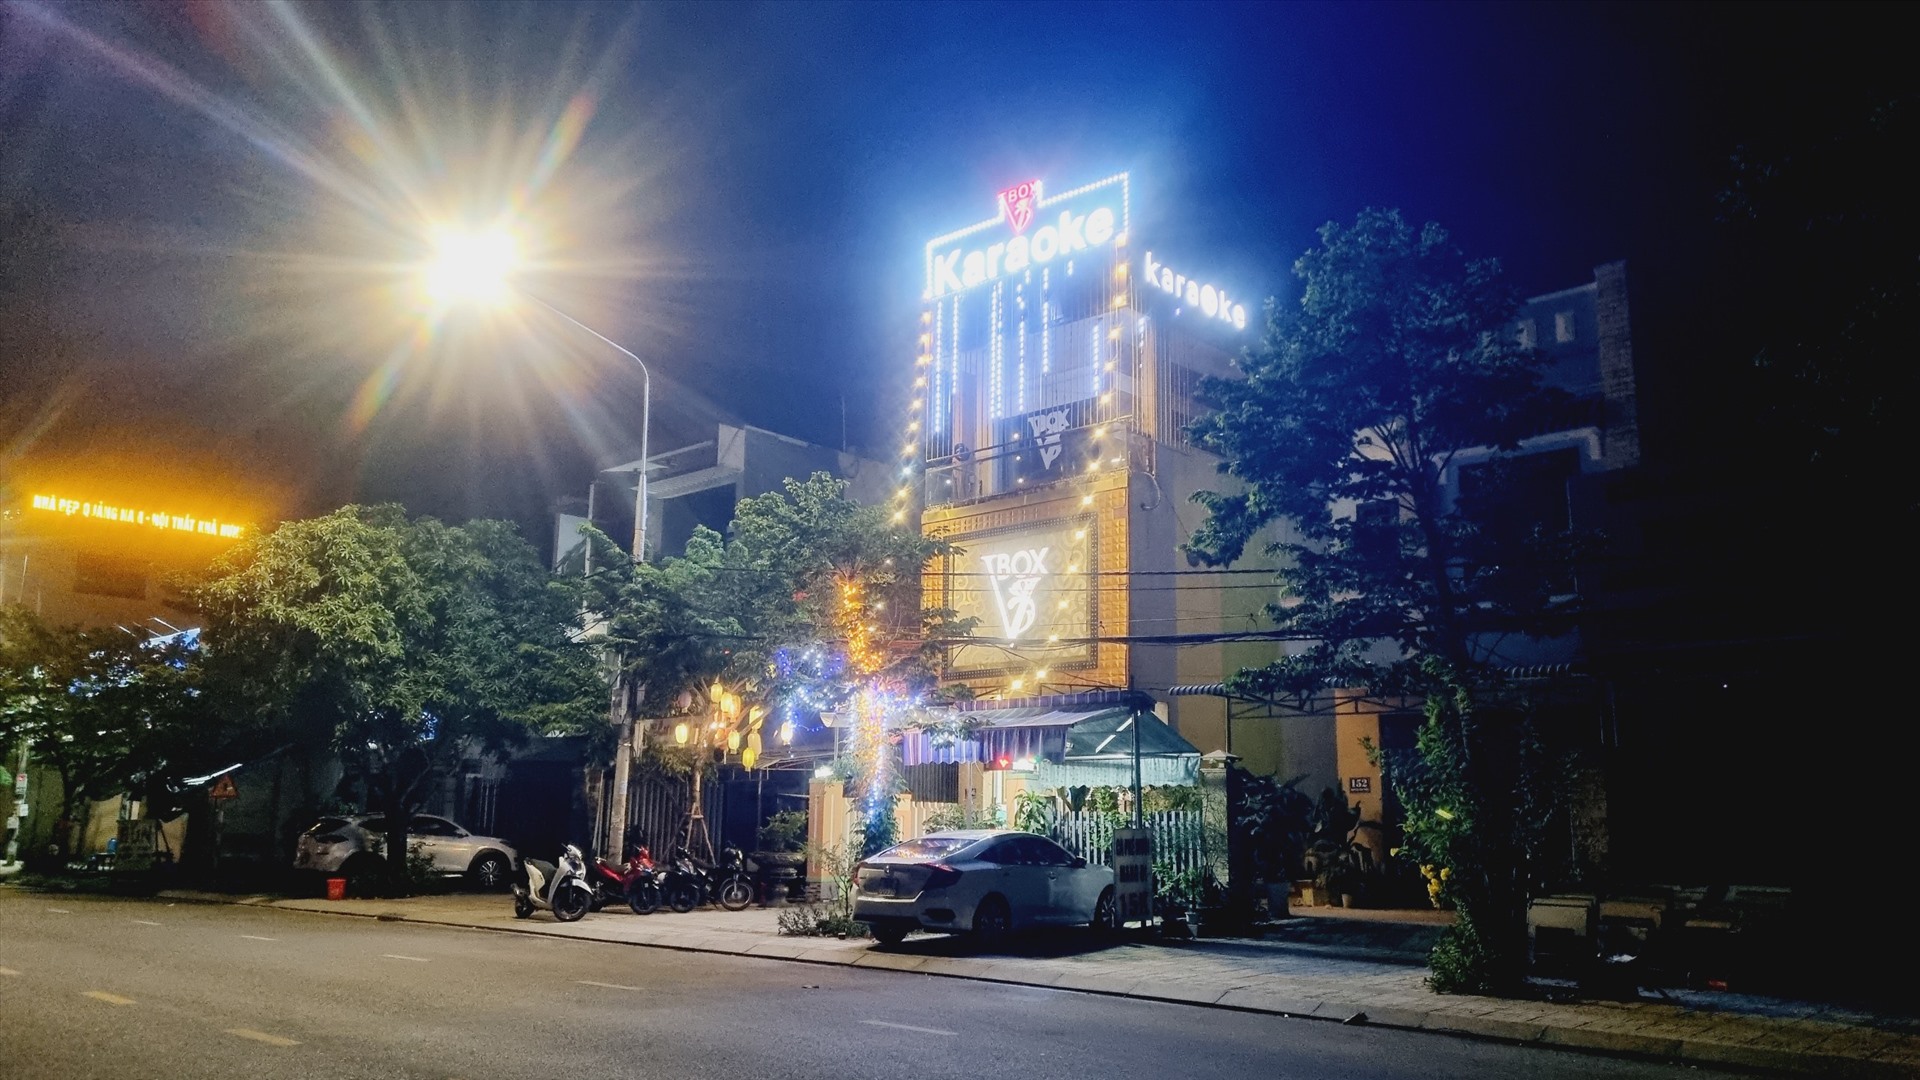 Quán Karaoke trên đường Nguyễn Văn Trỗi, phường Tân Thạnh, TP Tam Kỳ vẫn hoạt động đến tận khuya dù nằm trong danh sách bị đình chỉ hoạt động để bổ sung PCCC. Ảnh Hoàng Bin